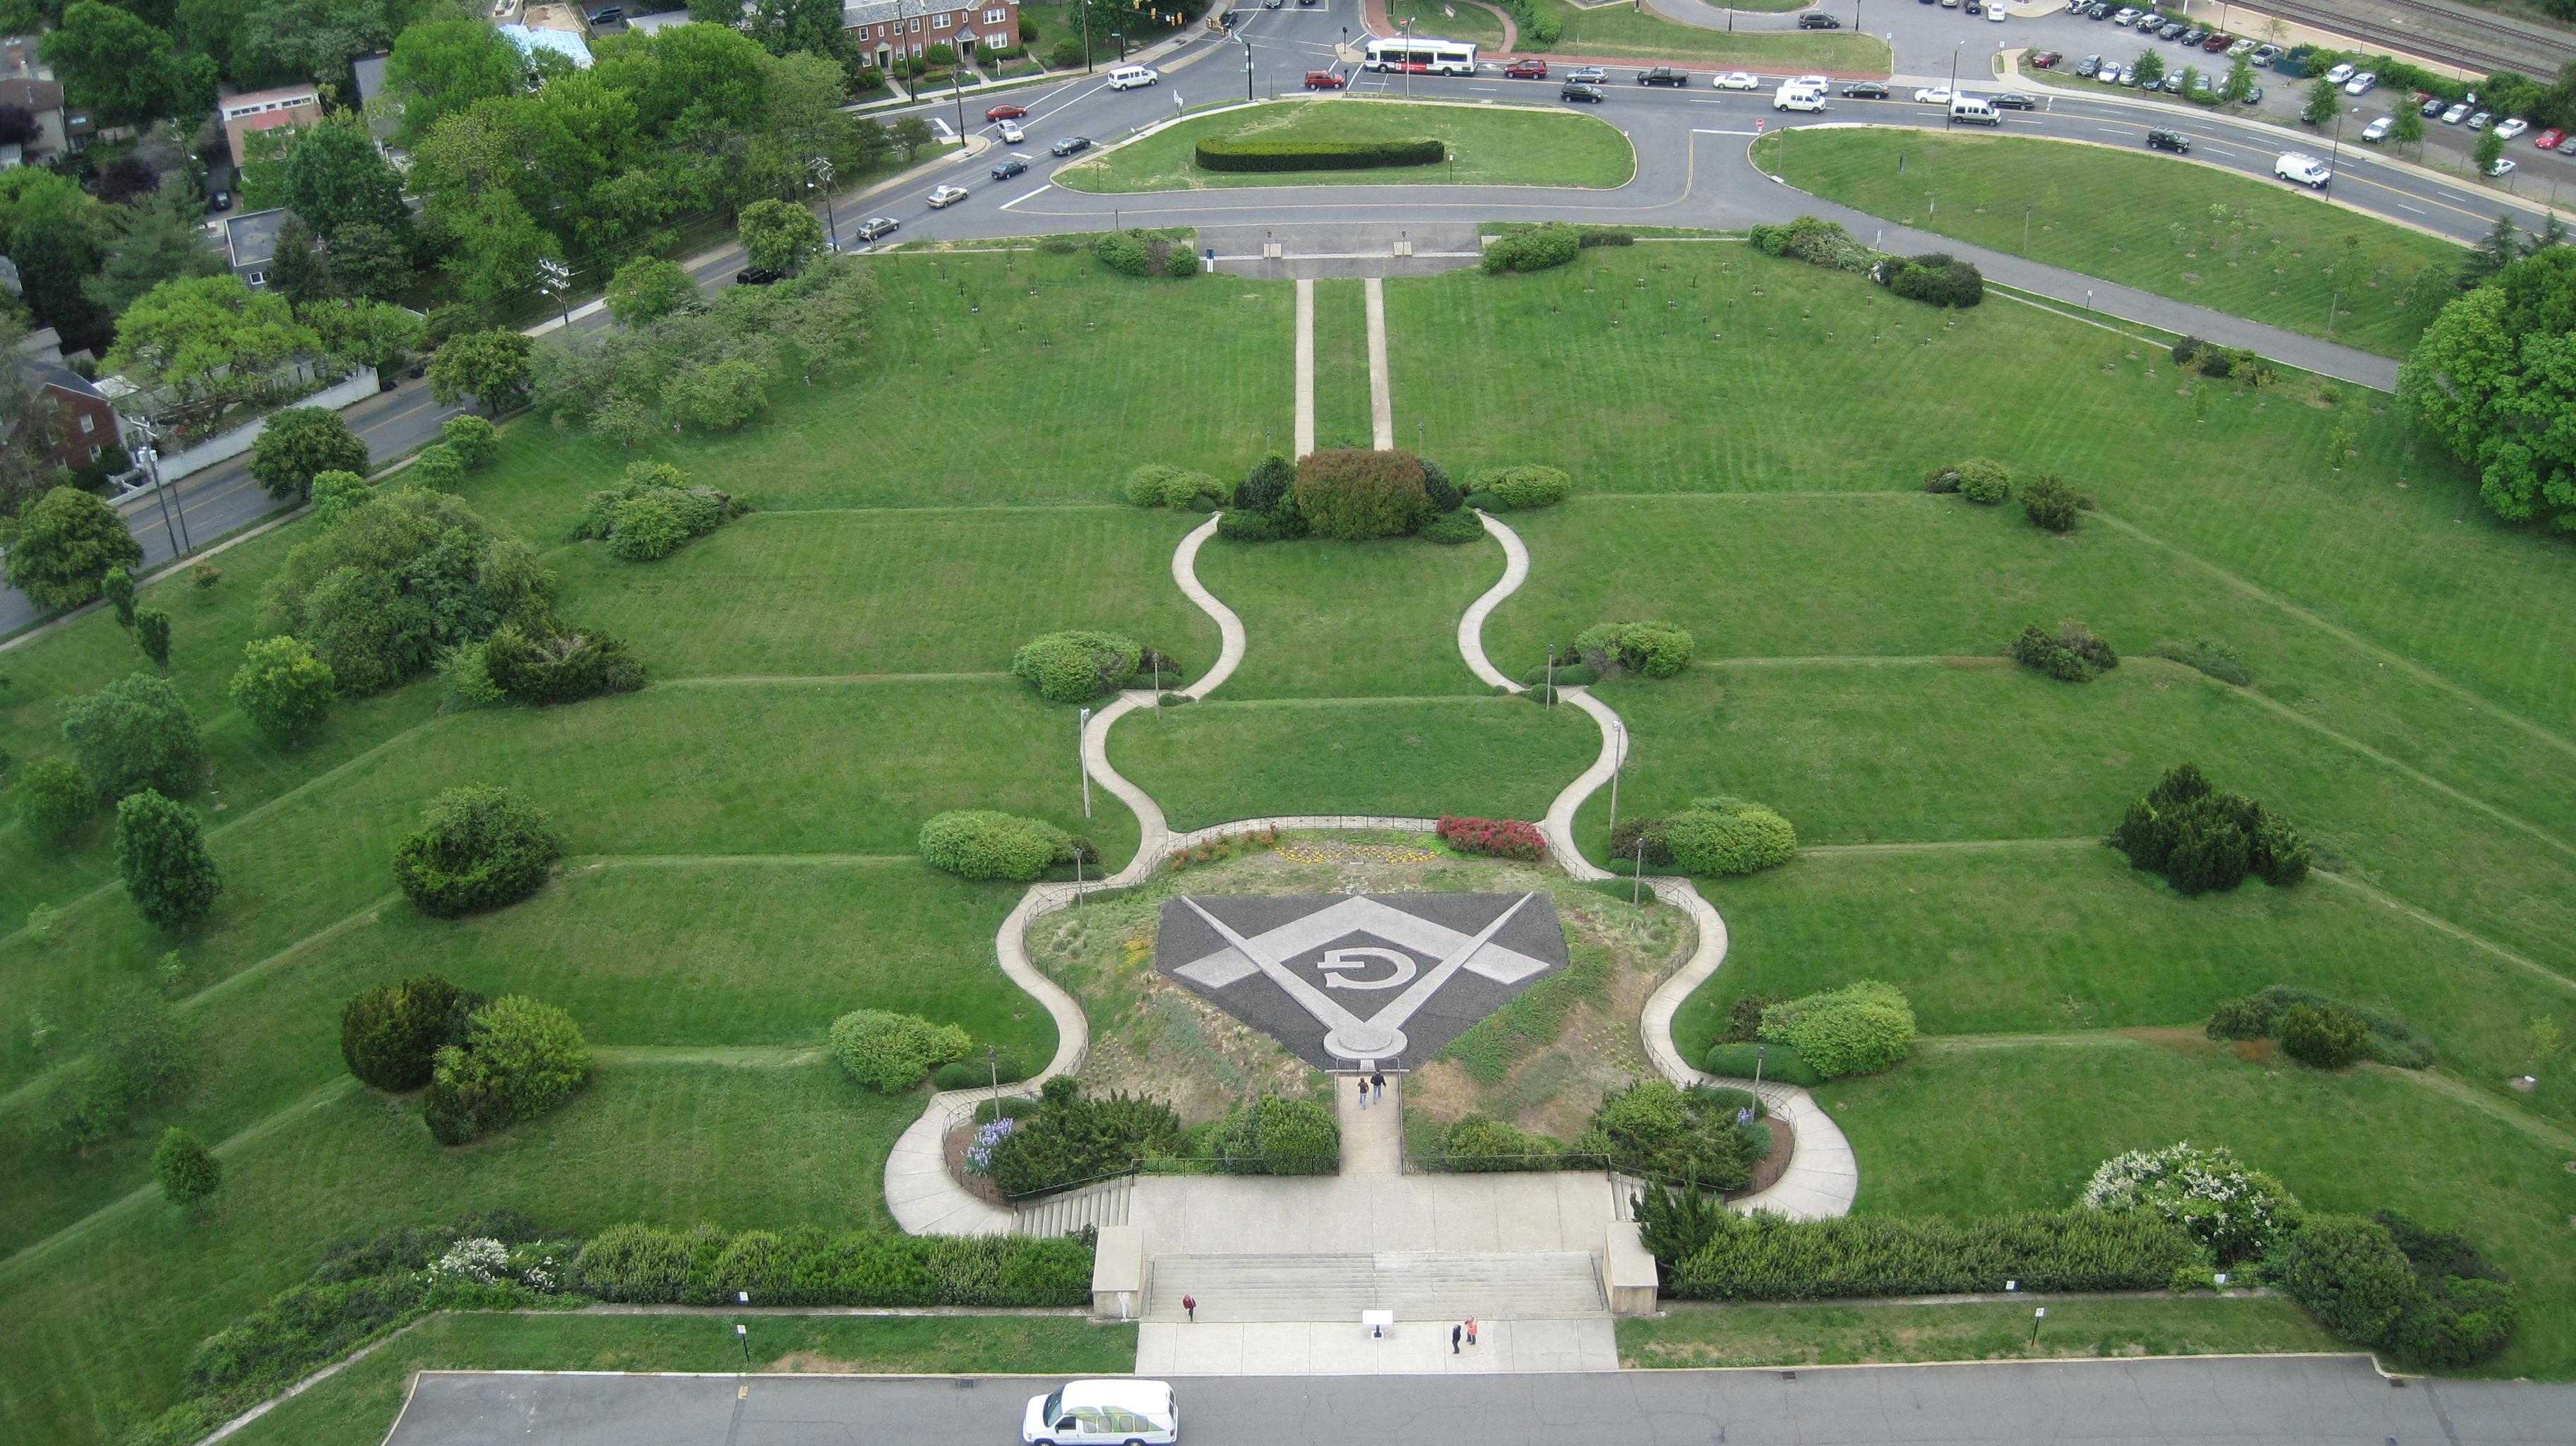 Fotoğraf Wikipedia'dan alınmıştır. George Washington Mason Ulusal Anıtı önü.